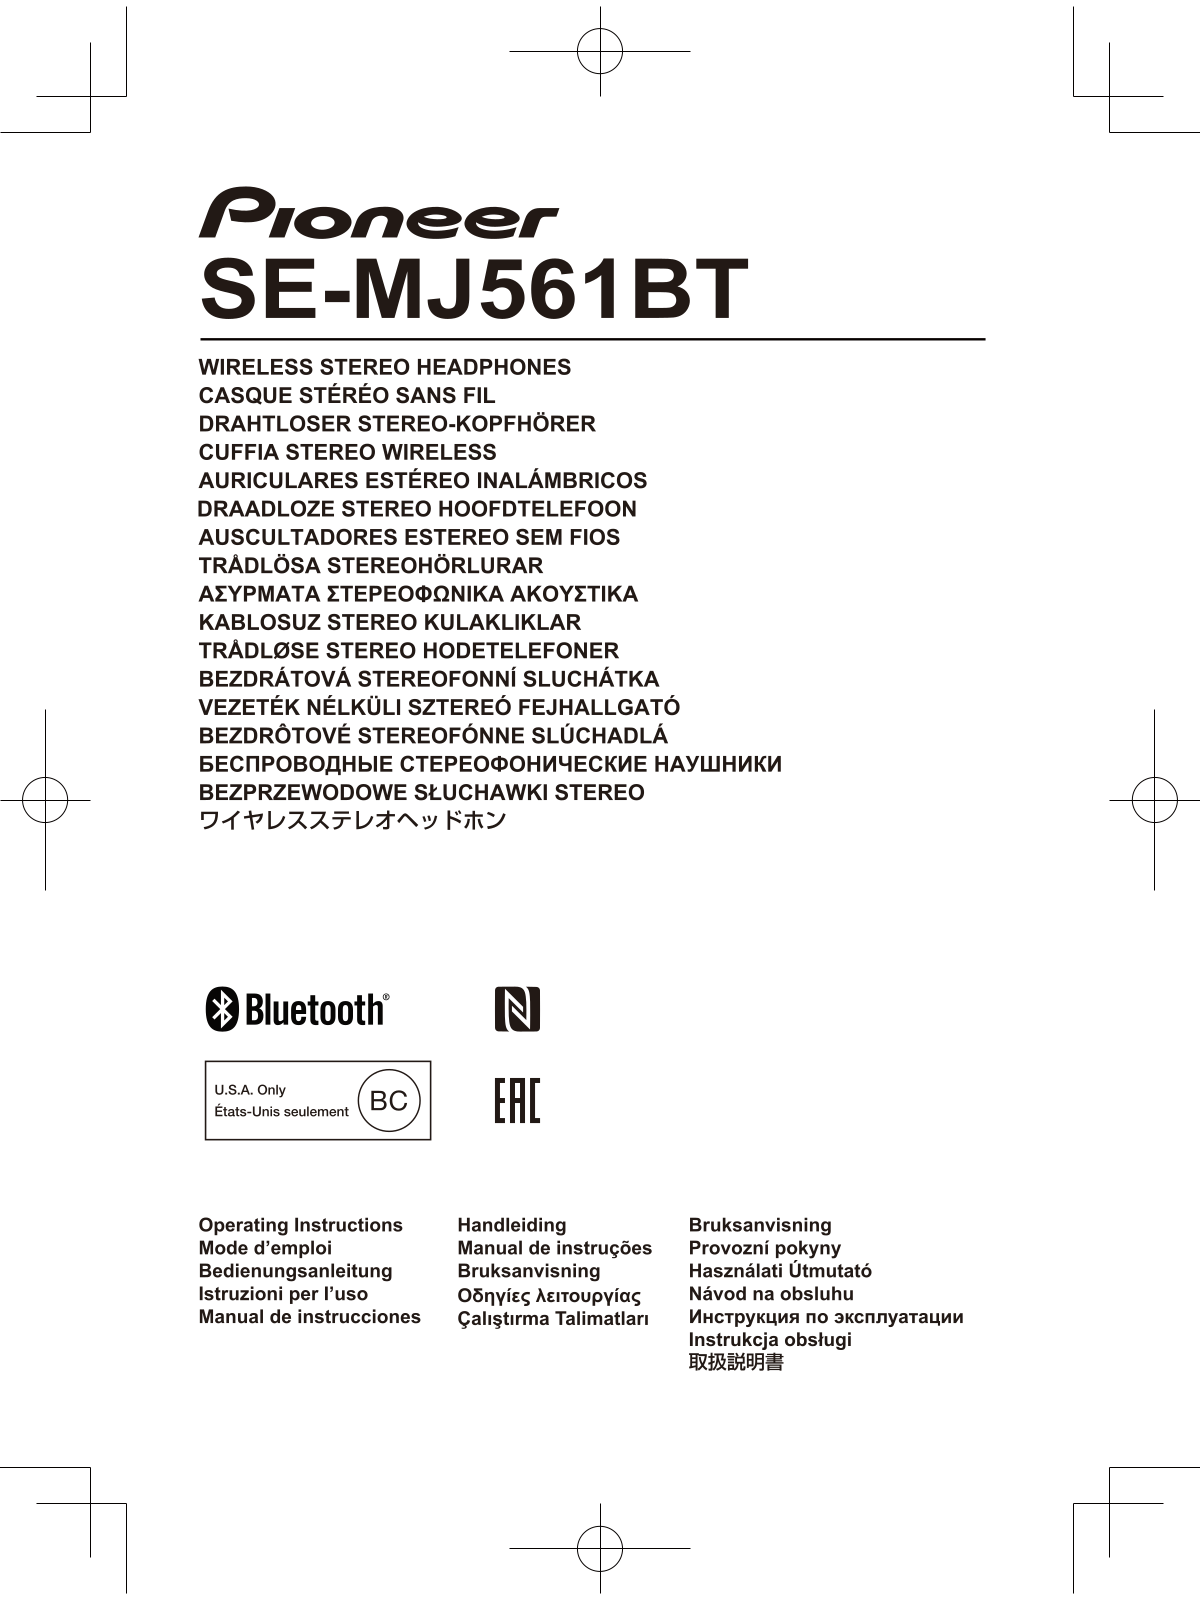 Pioneer SE-MJ561BT User Manual